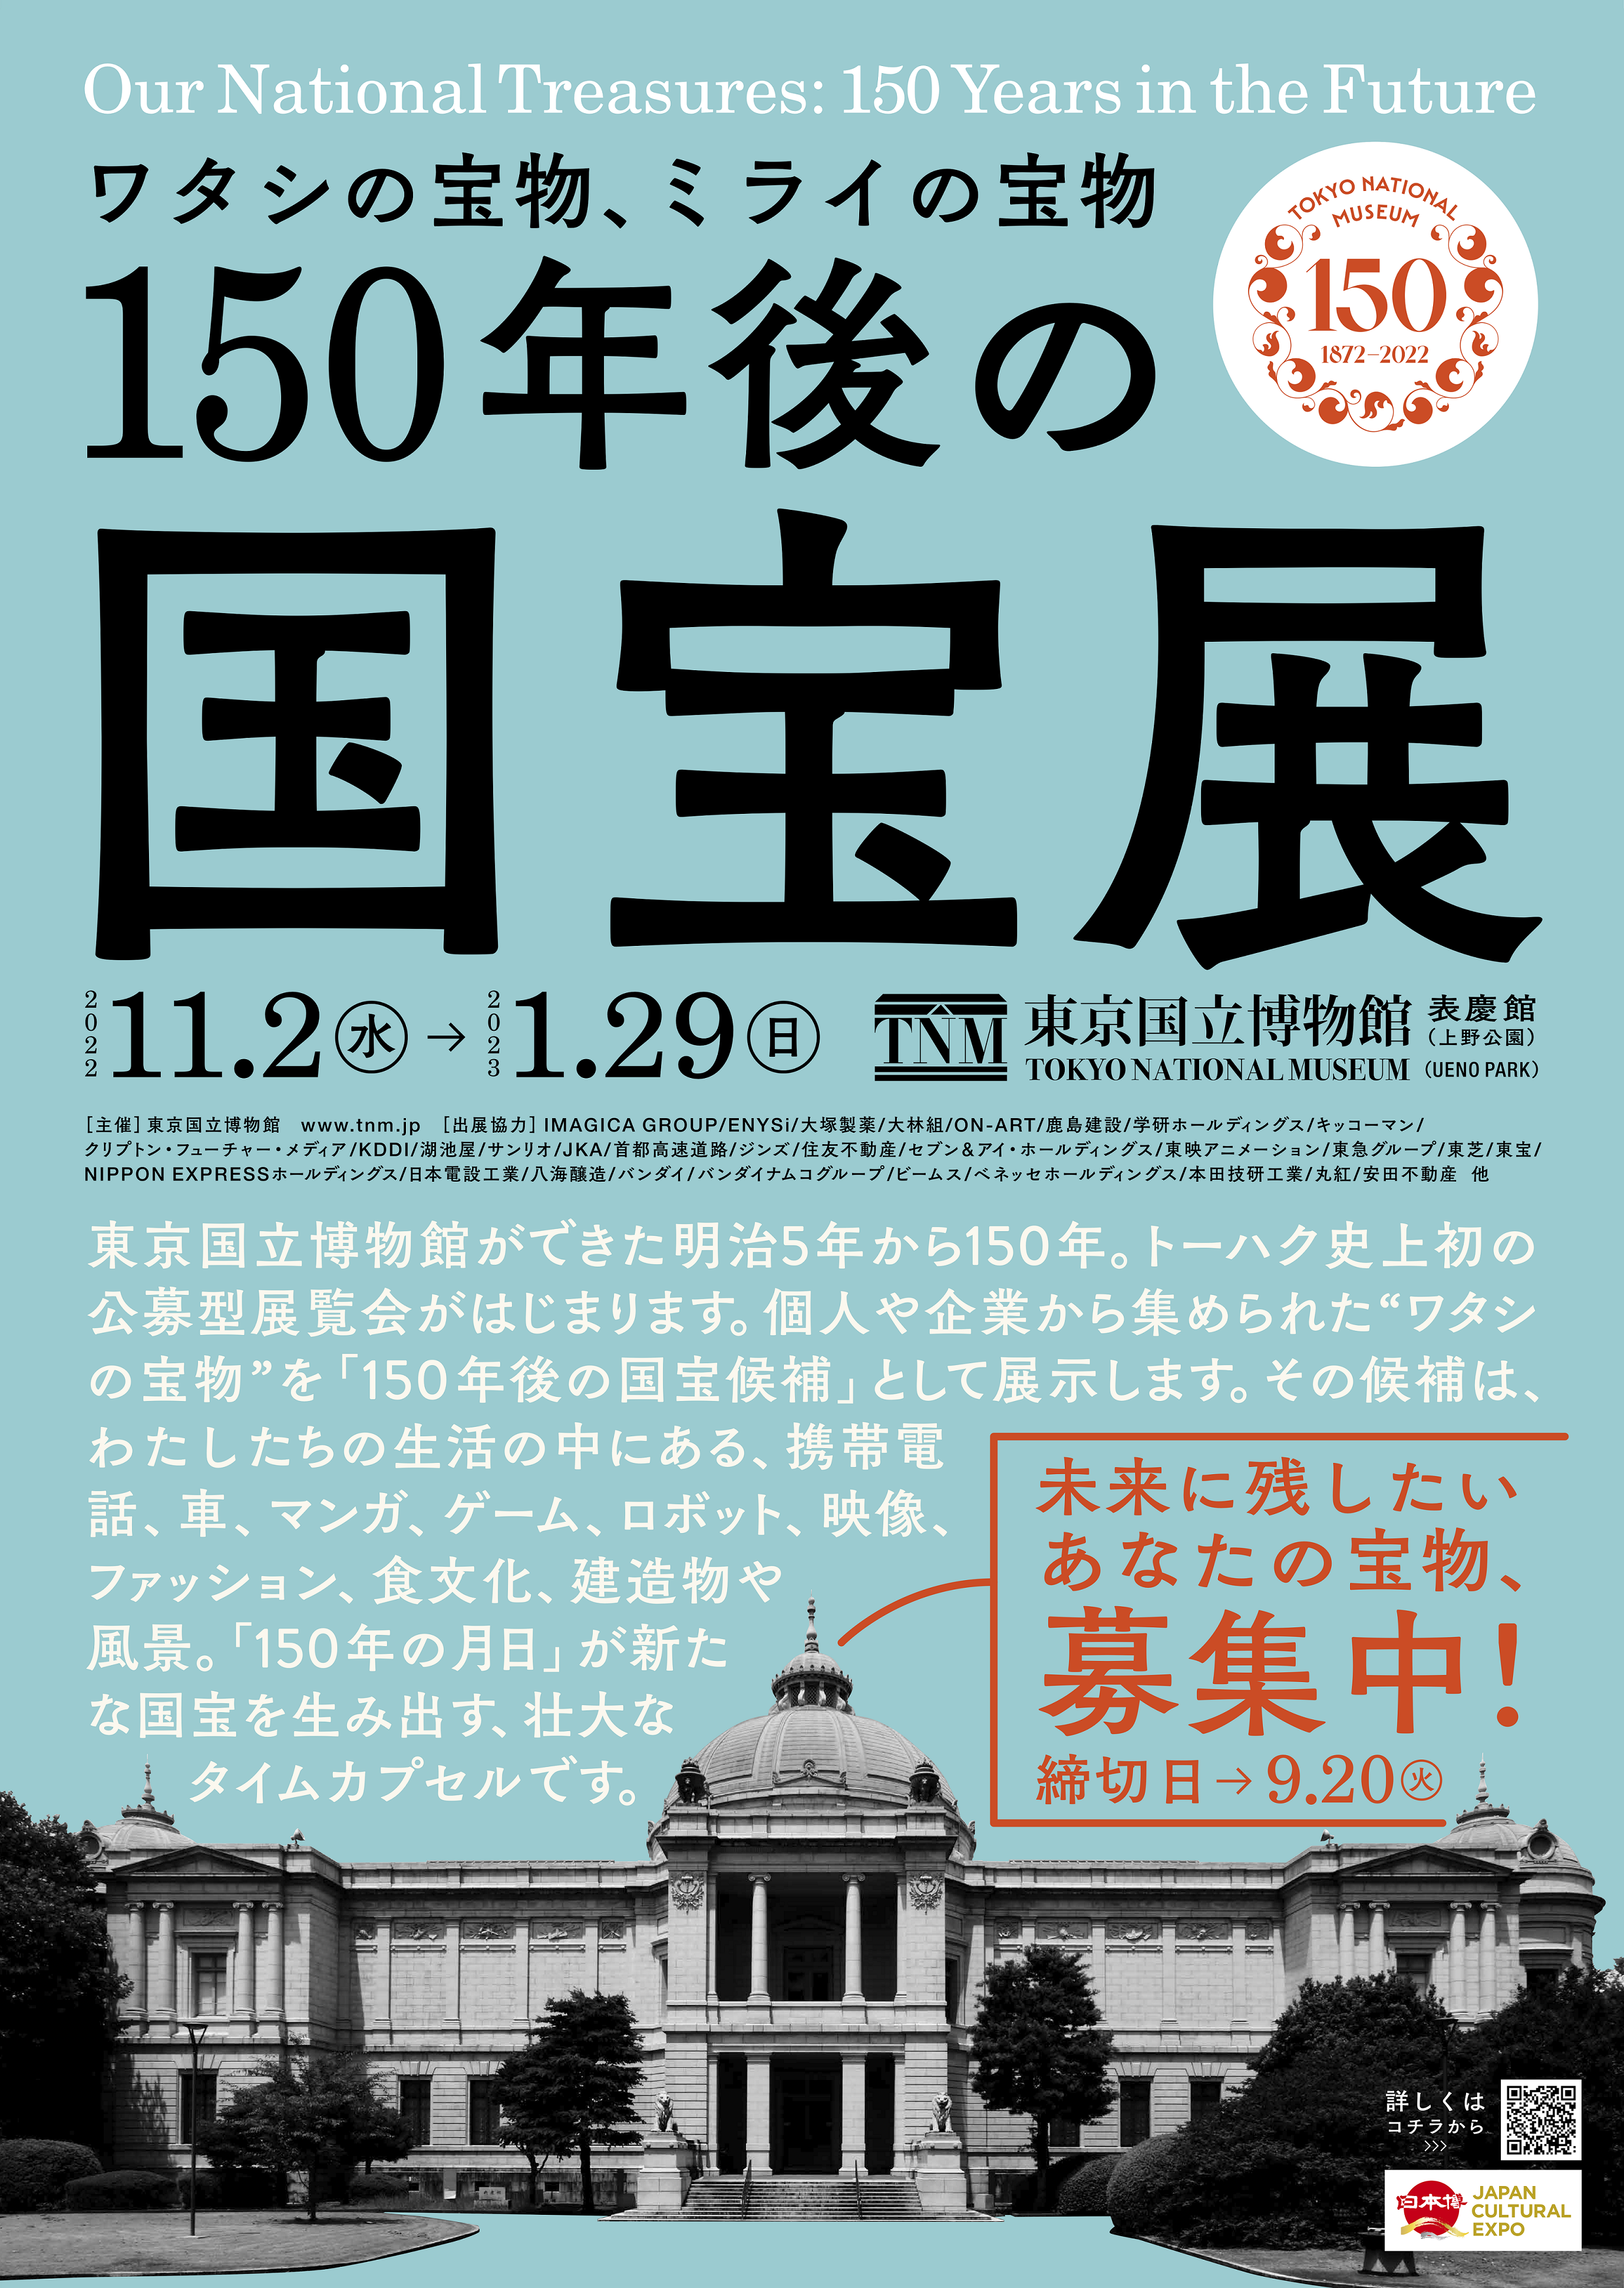 期間限定の激安セール 国宝展スタンプラリー 東京国立博物館 国宝展 国宝